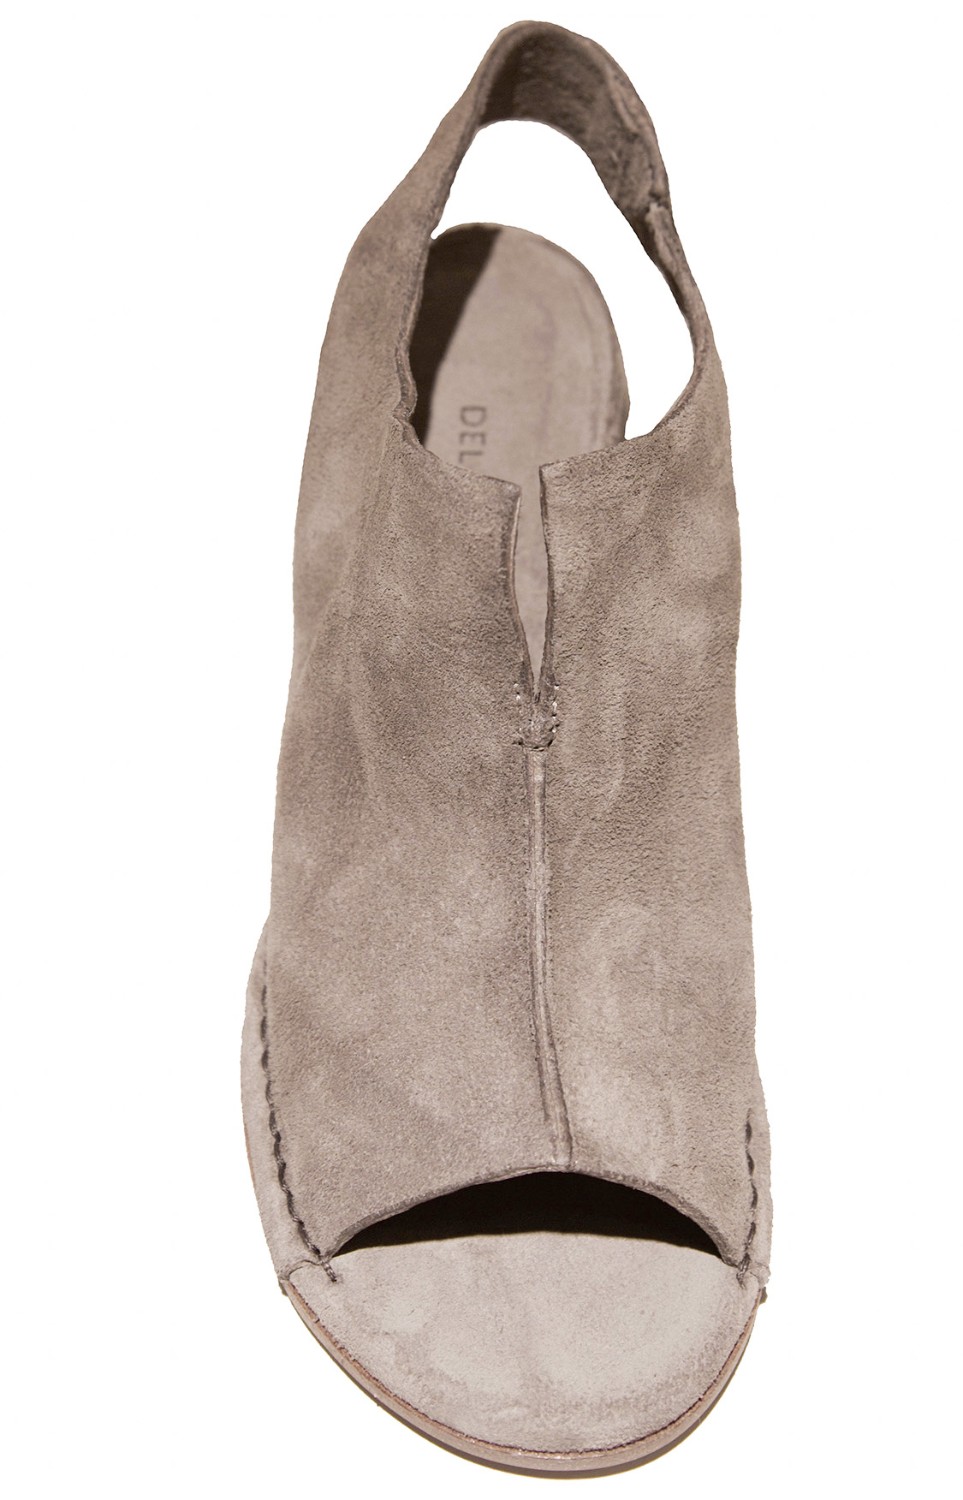 shop Del Carlo Sales Scarpe: Sandalo Del Carlo, tacco largo, in camoscio grigio fumo.

Composizione: 100% pelle.
Altezza tacco: 7 cm. number 1205